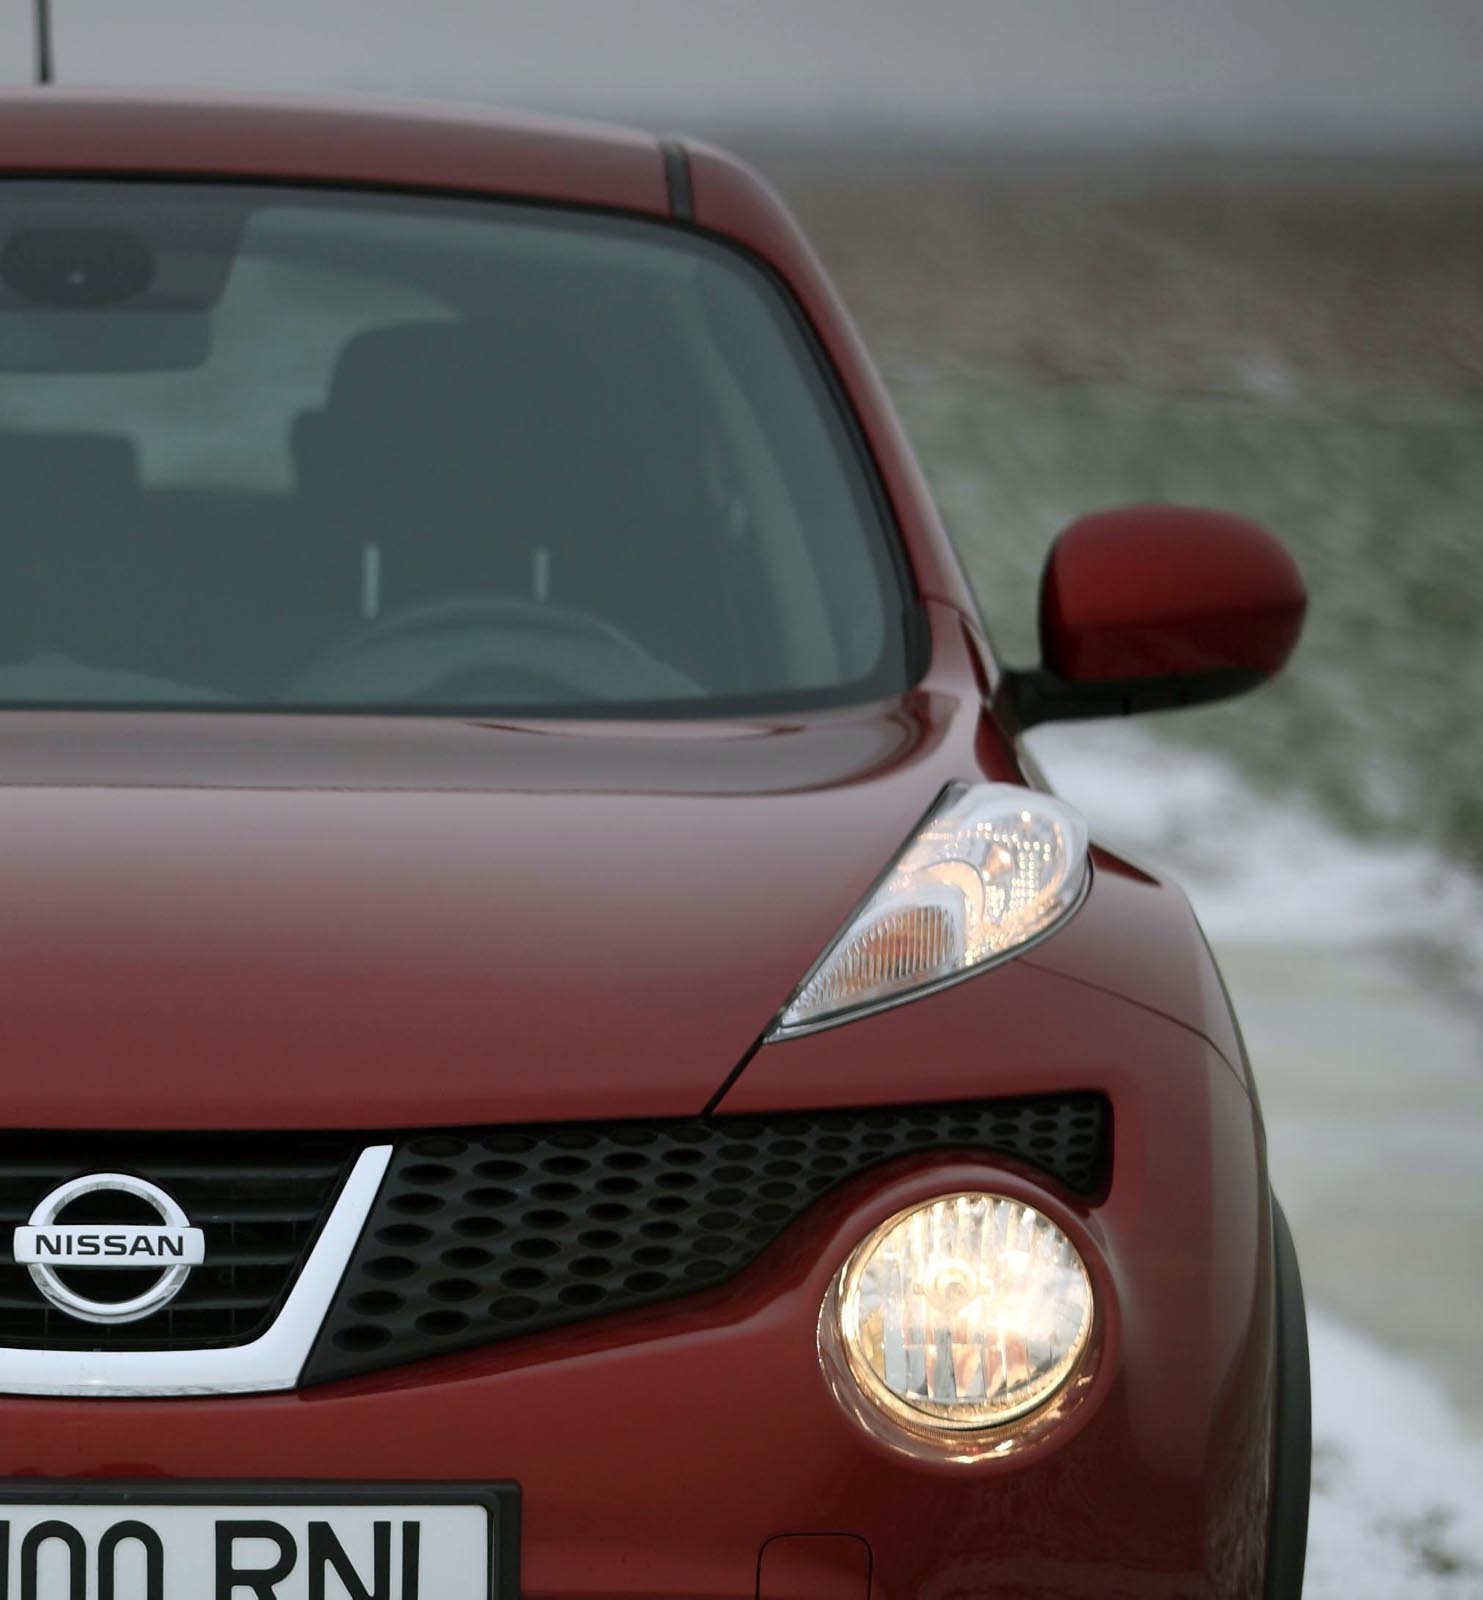 Nissan Juke 1.6 - pret de pornire: 15.490 euro pentru versiunea de baza Visia